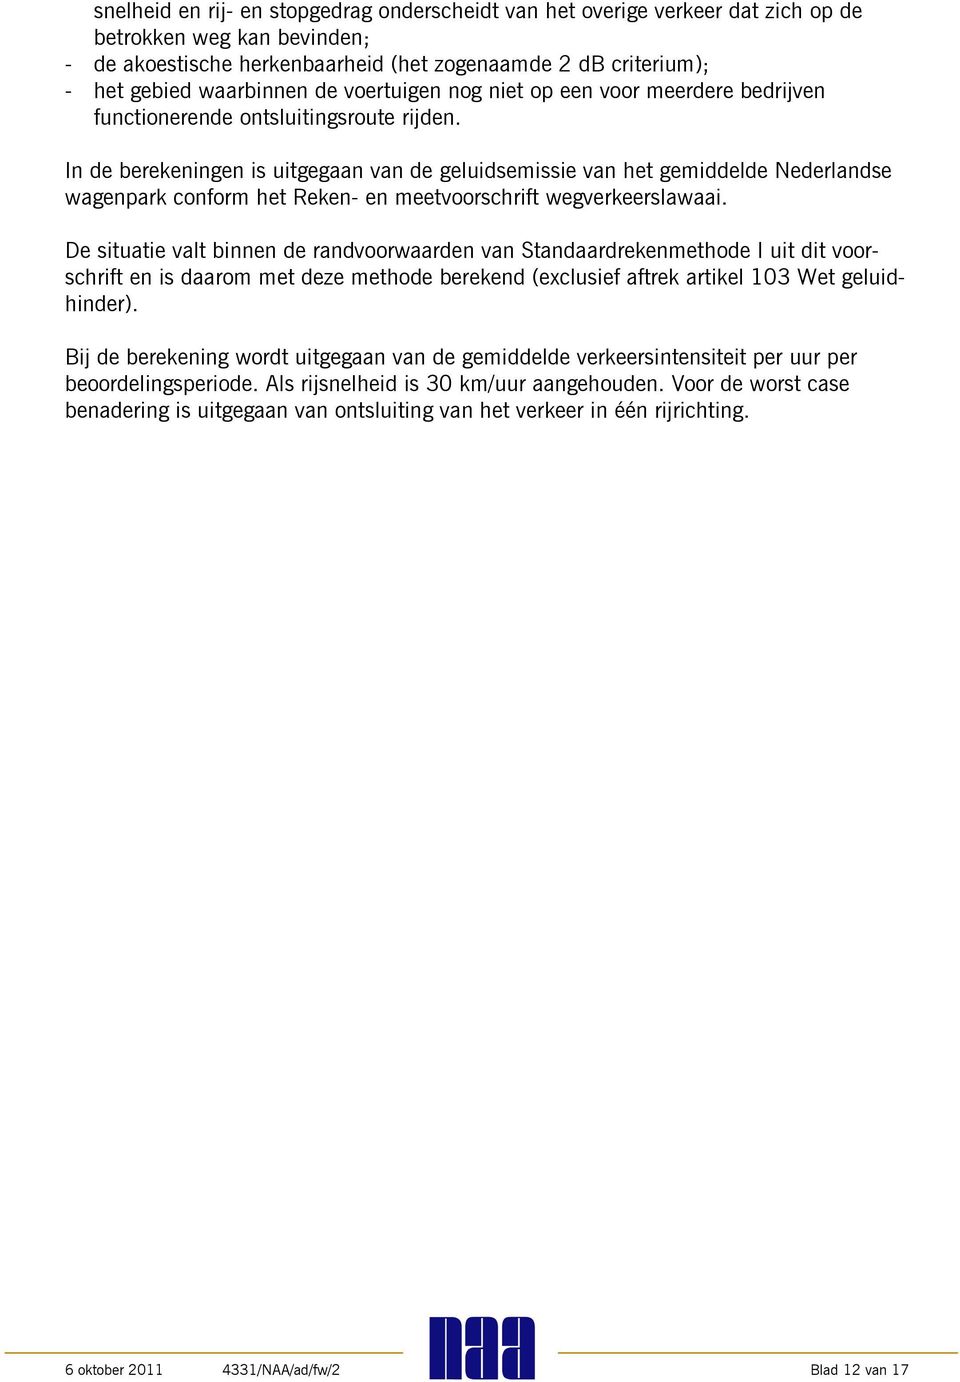 In de berekeningen is uitgegaan van de geluidsemissie van het gemiddelde Nederlandse wagenpark conform het Reken- en meetvoorschrift wegverkeerslawaai.